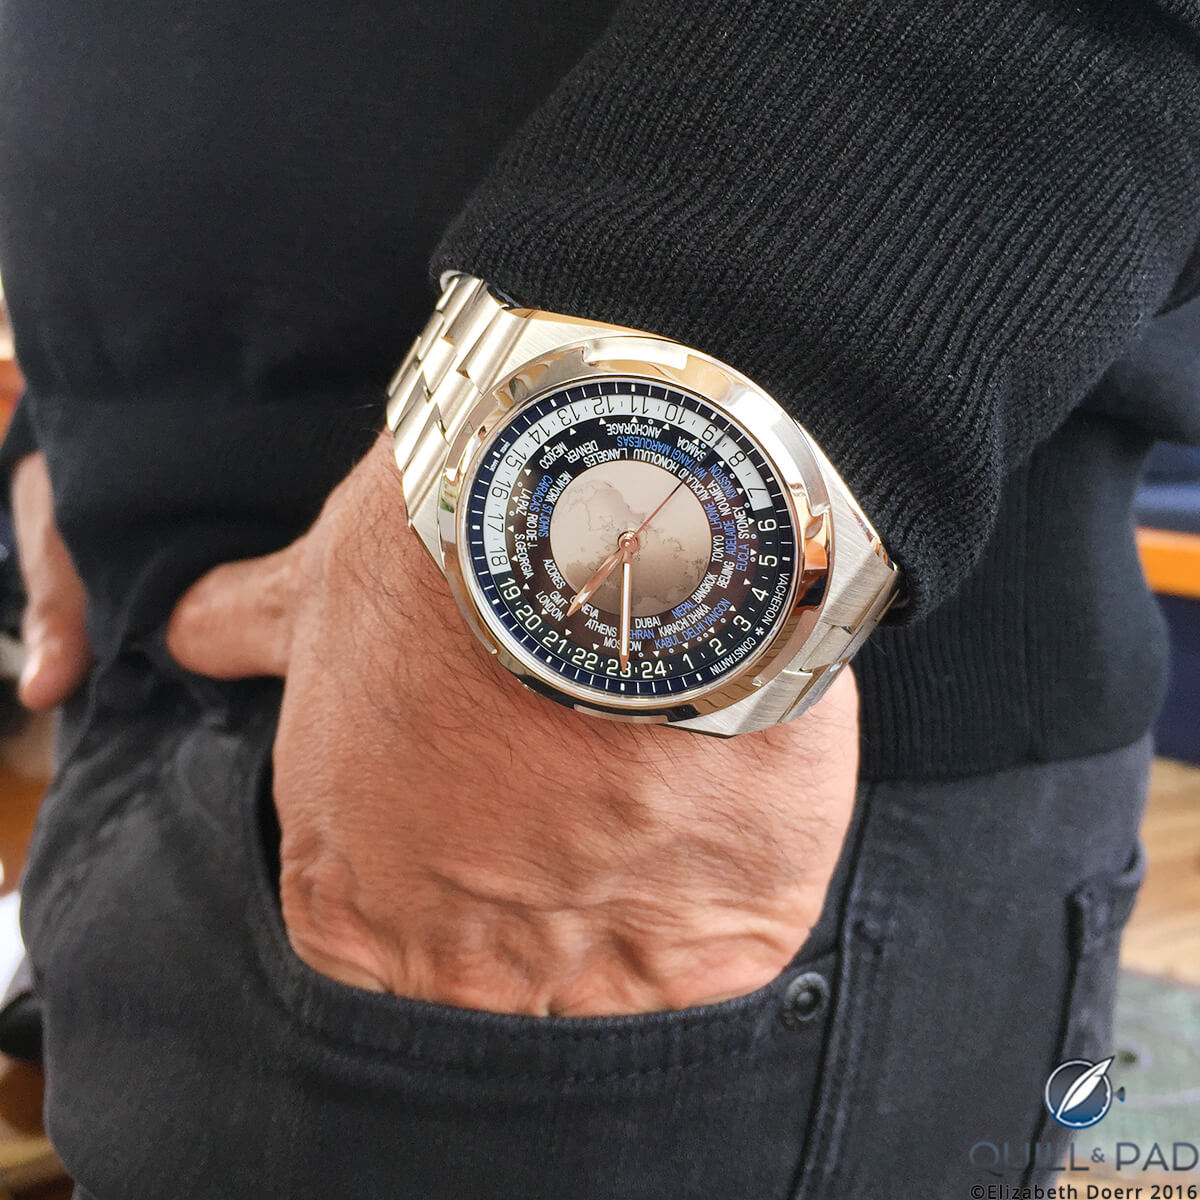 The Vacheron Constantin Overseas worldtimer with a blue dial